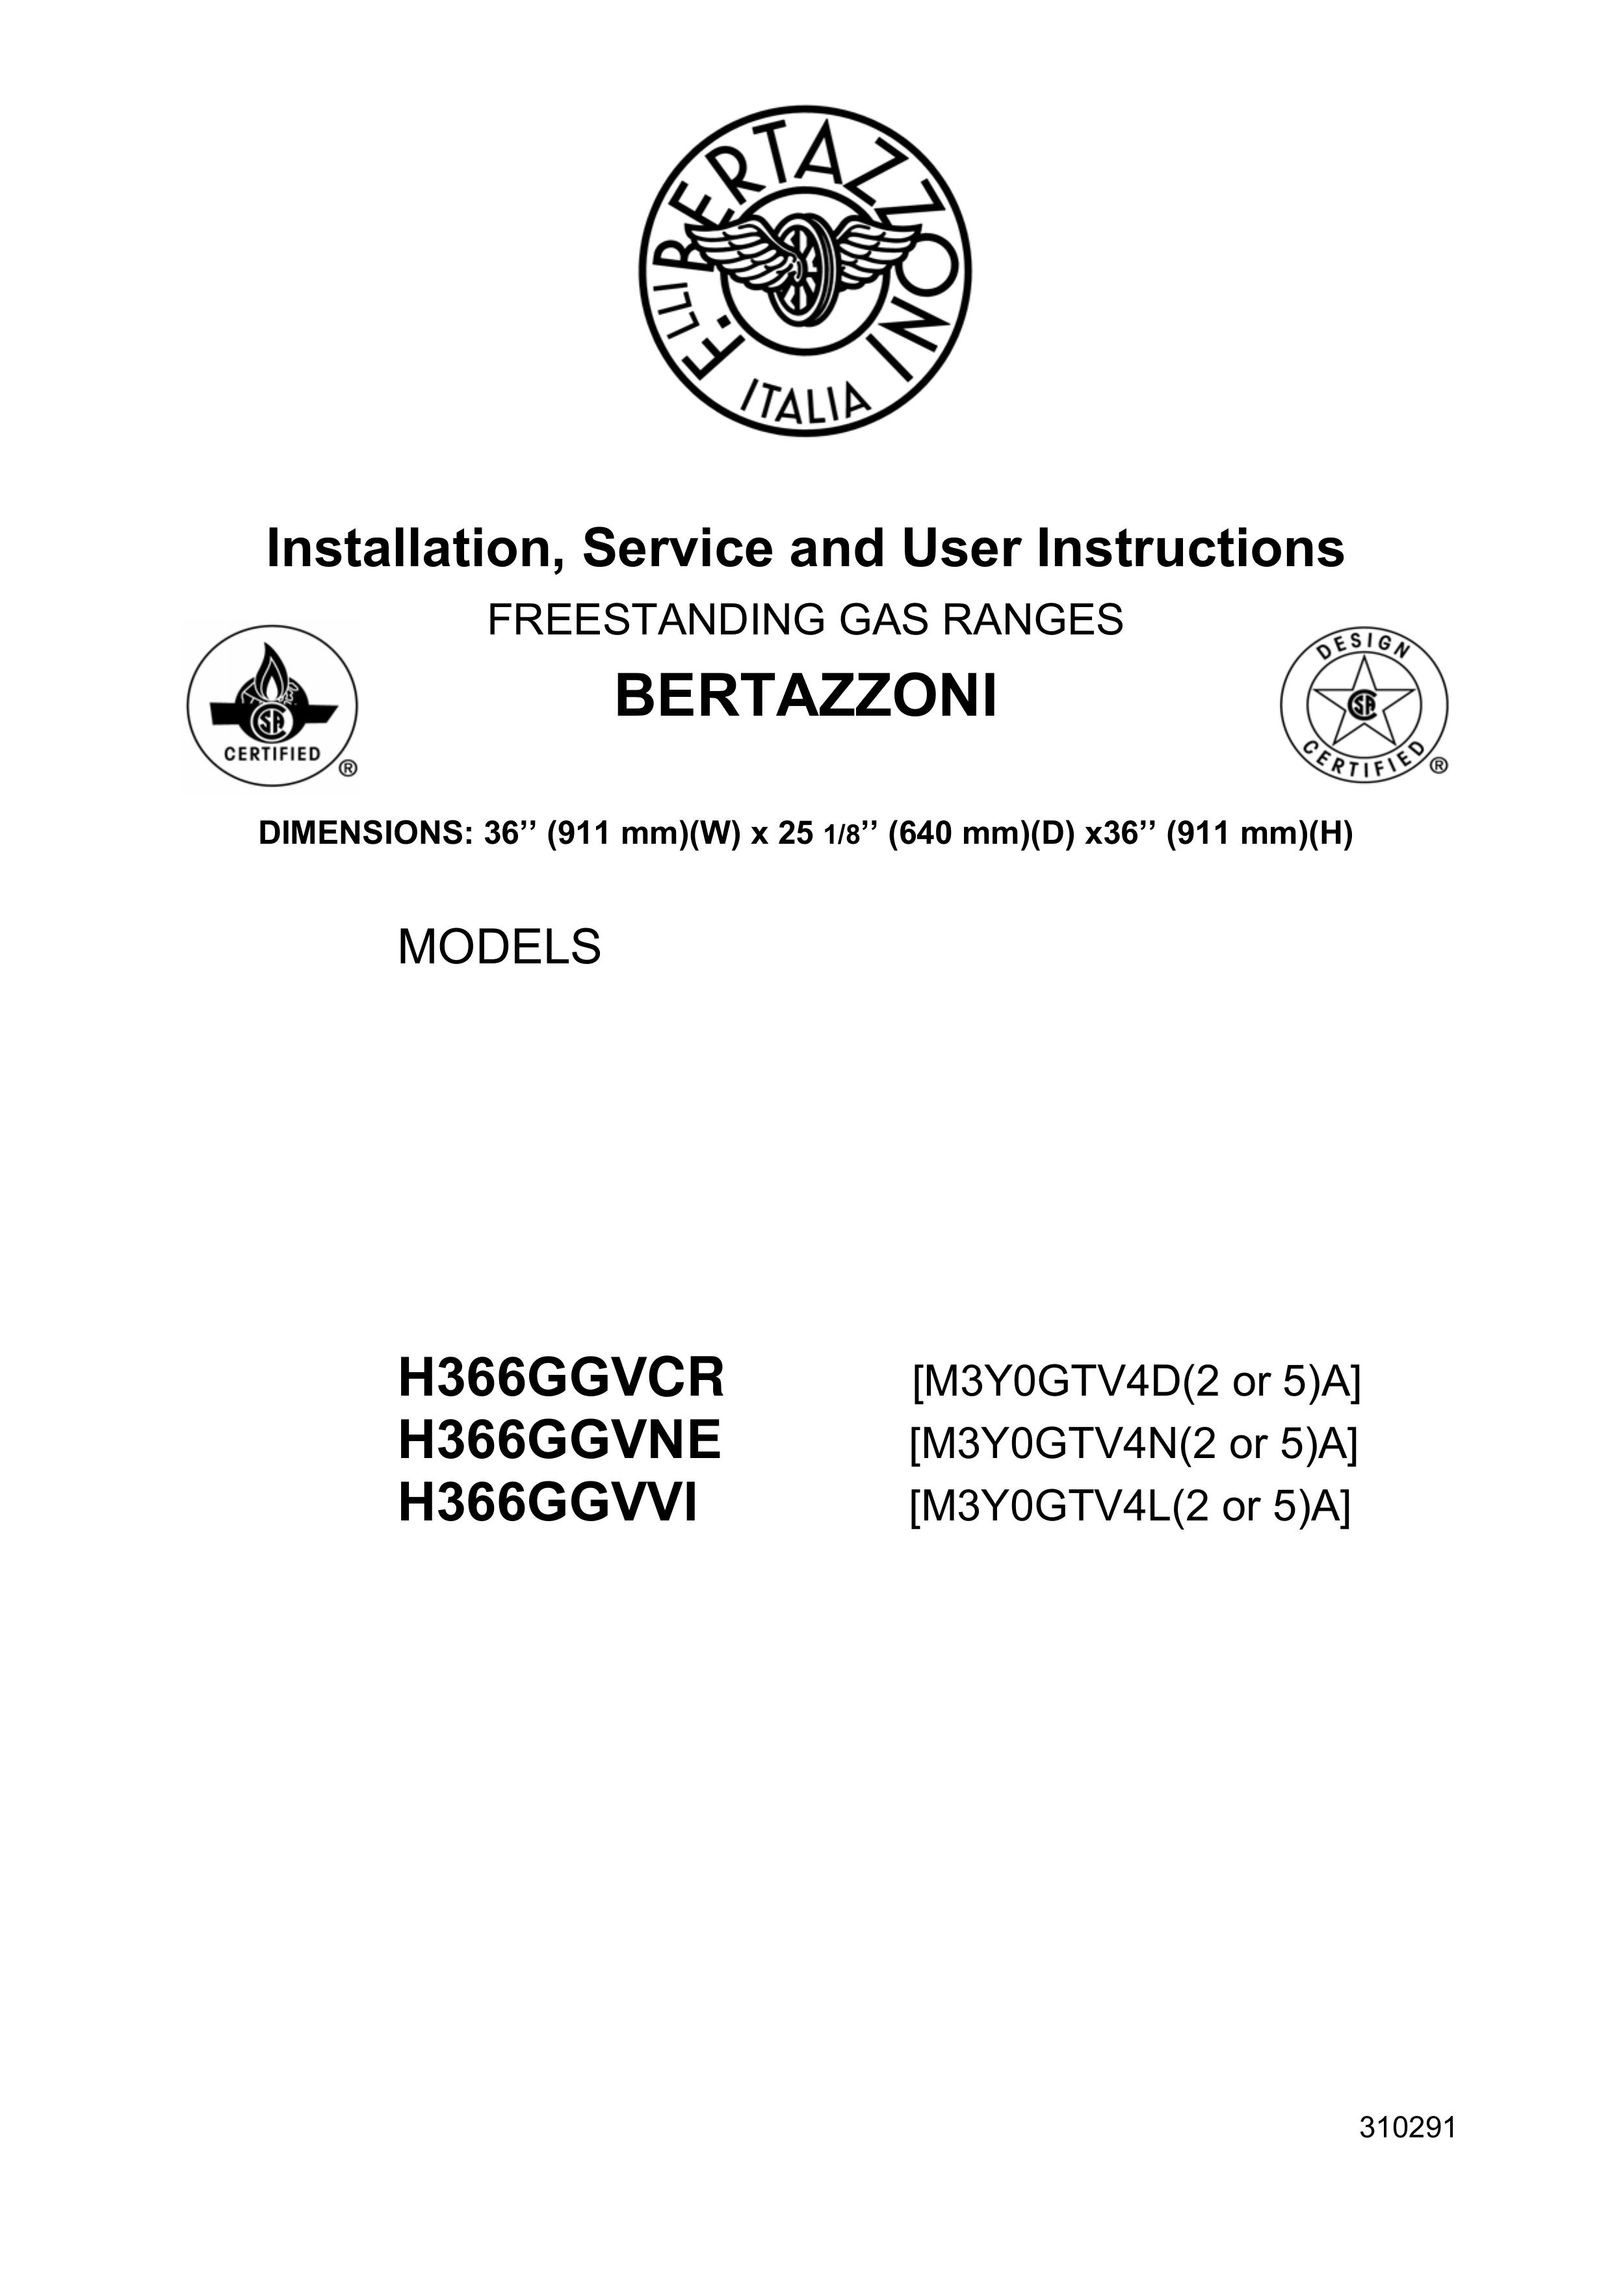 Bertazzoni H366GGVNE Range User Manual